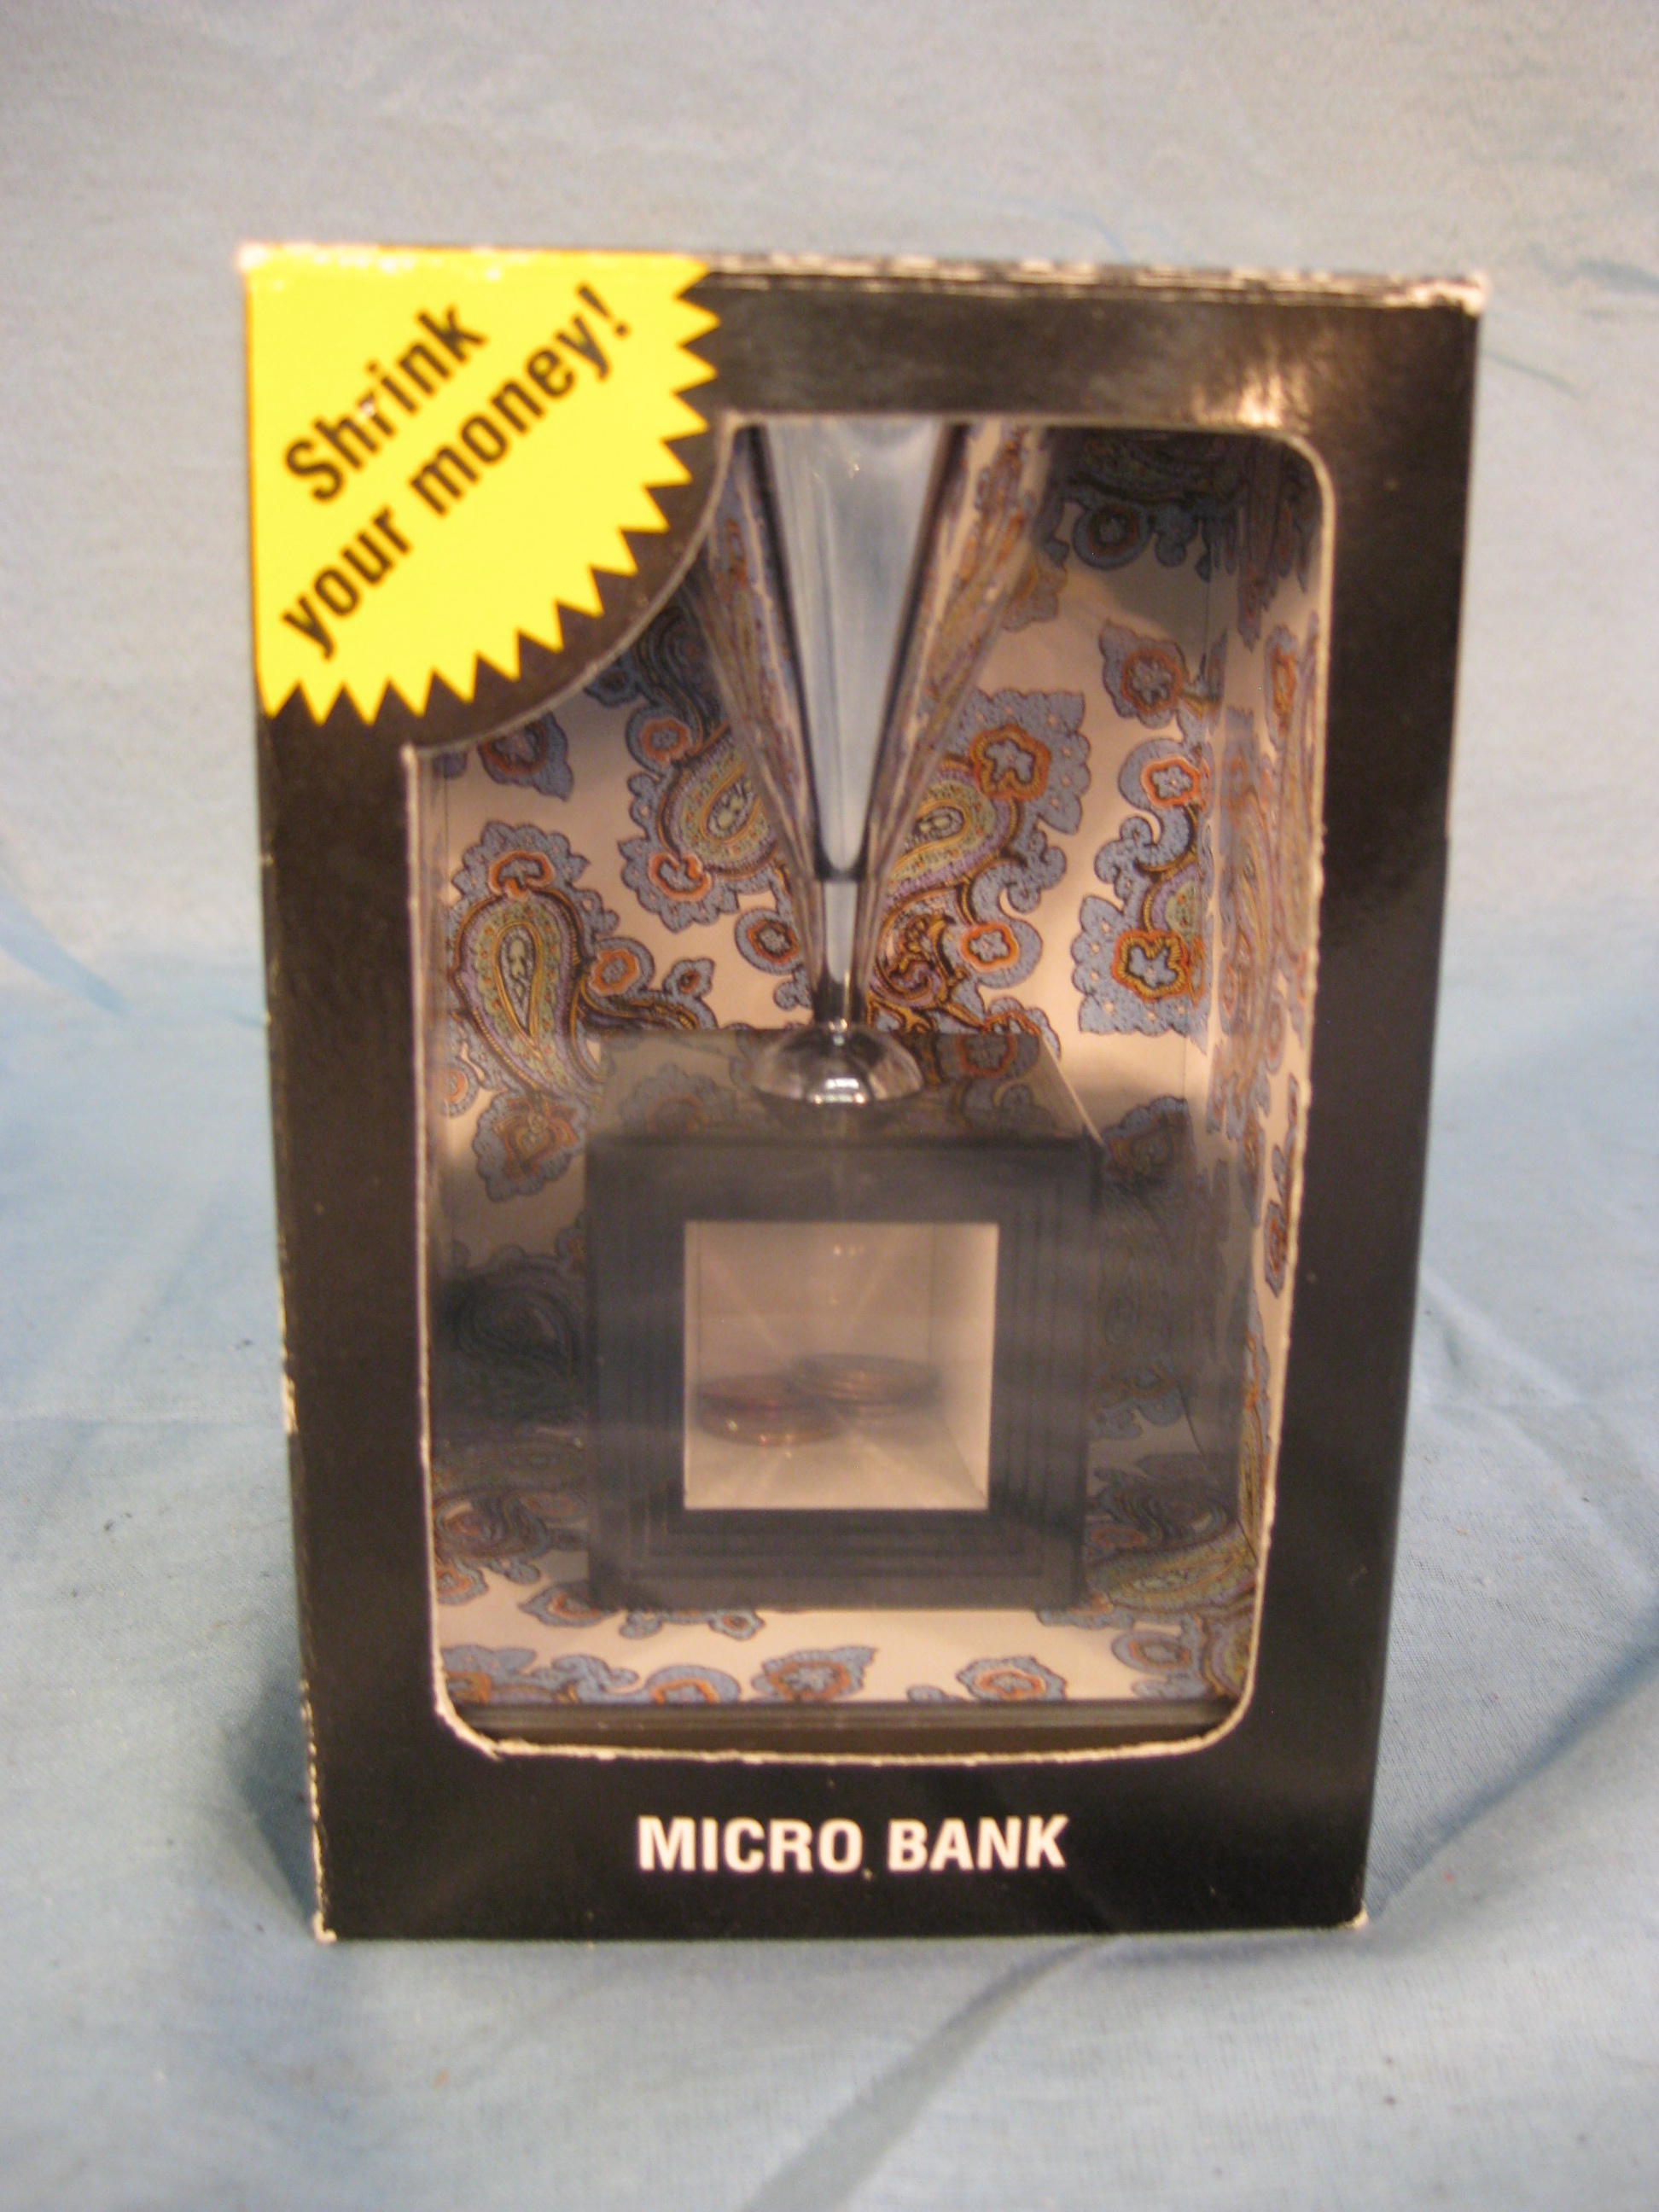 Micro bank - shrink coin.